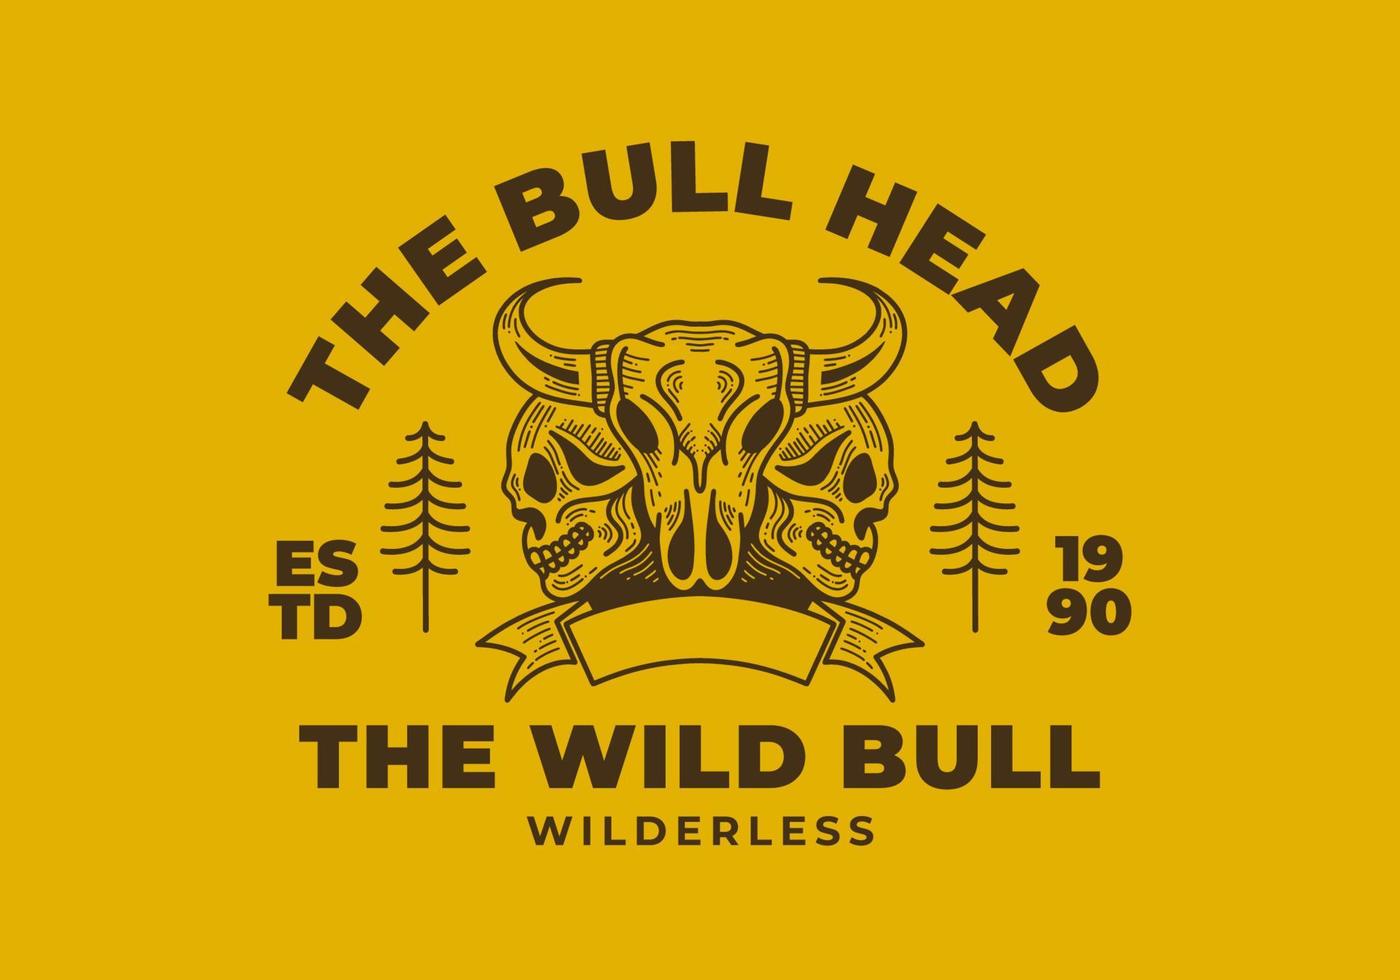 diseño retro del ejemplo de la cabeza del toro y del cráneo en fondo amarillo vector